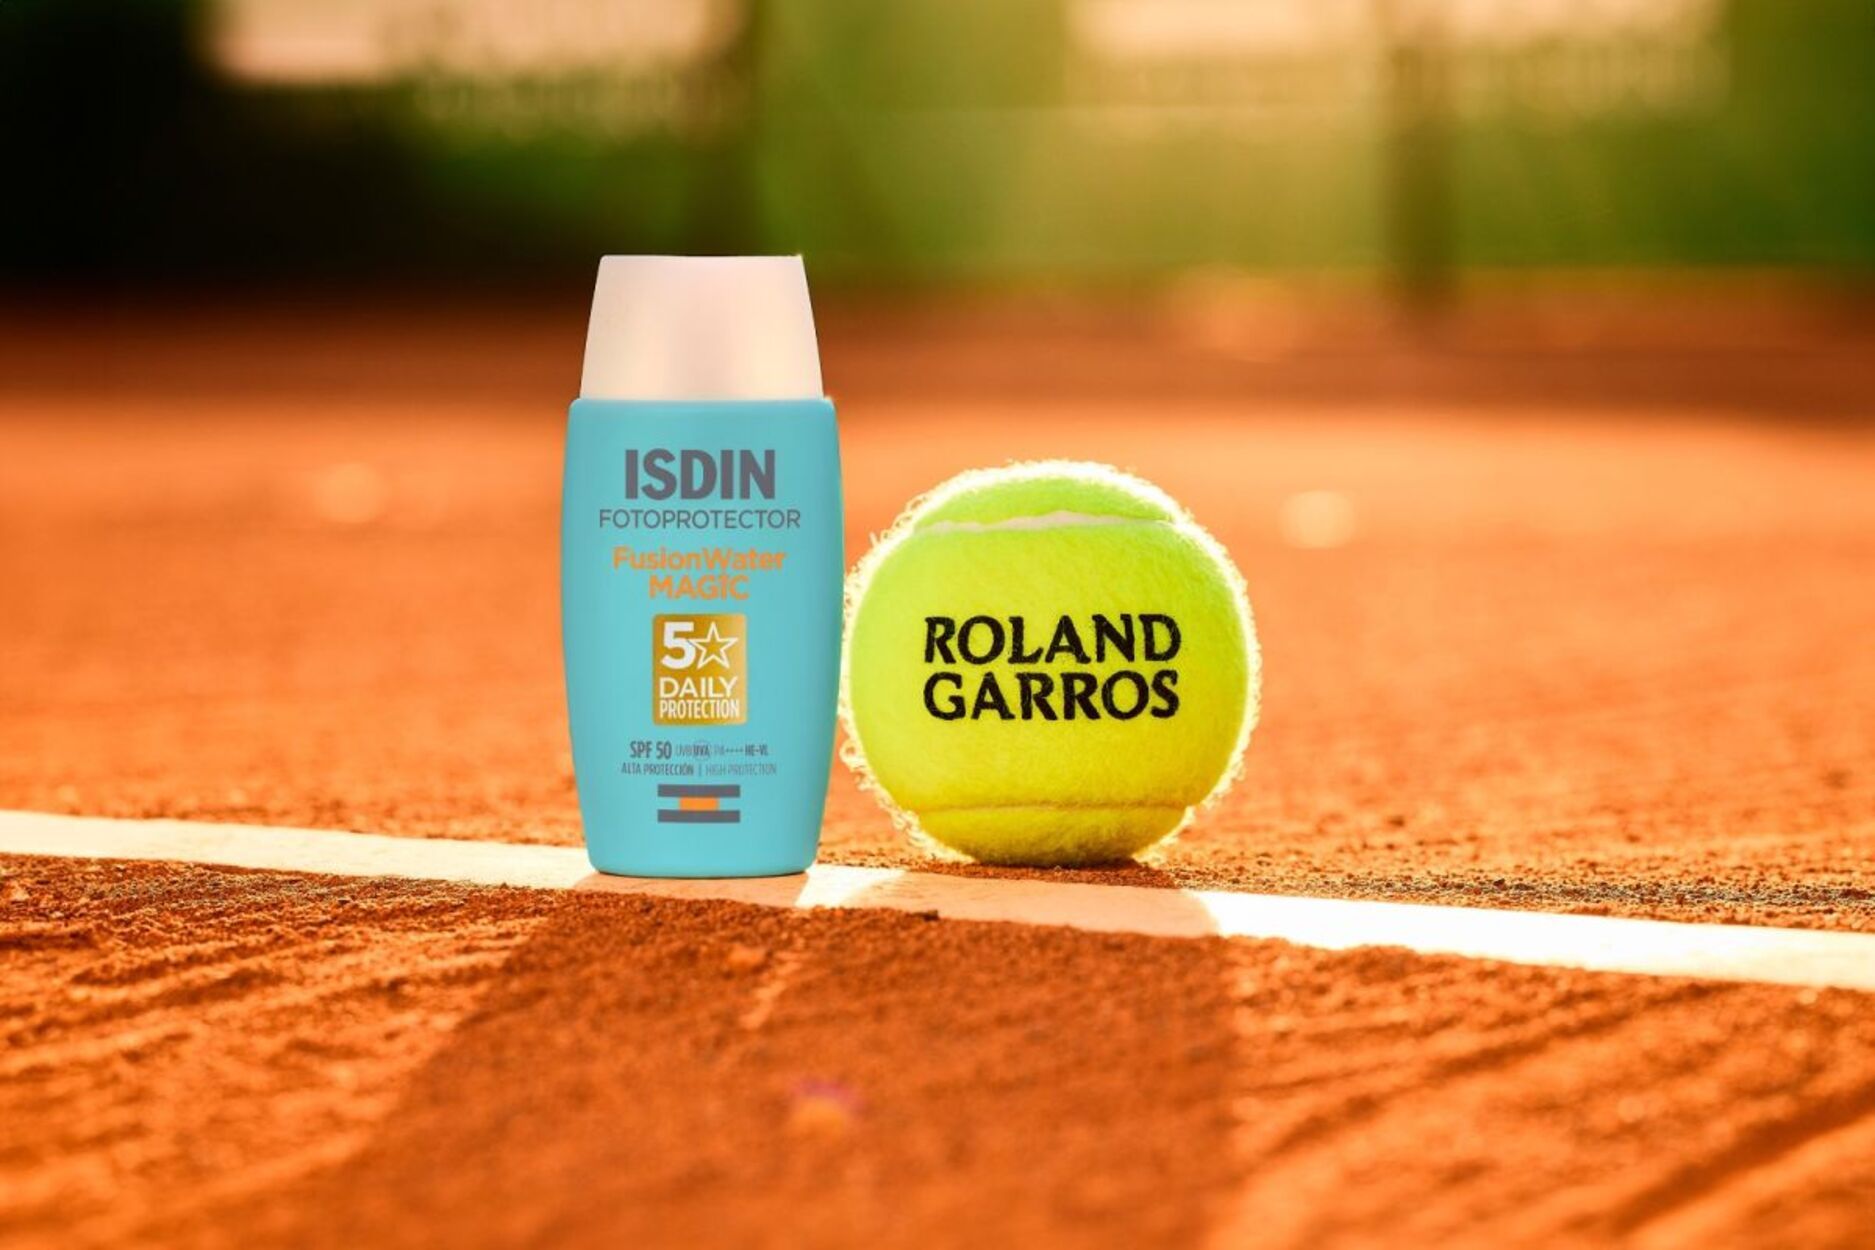 ISDIN y el Roland Garros se unen para concienciar y prevenir el cáncer de piel